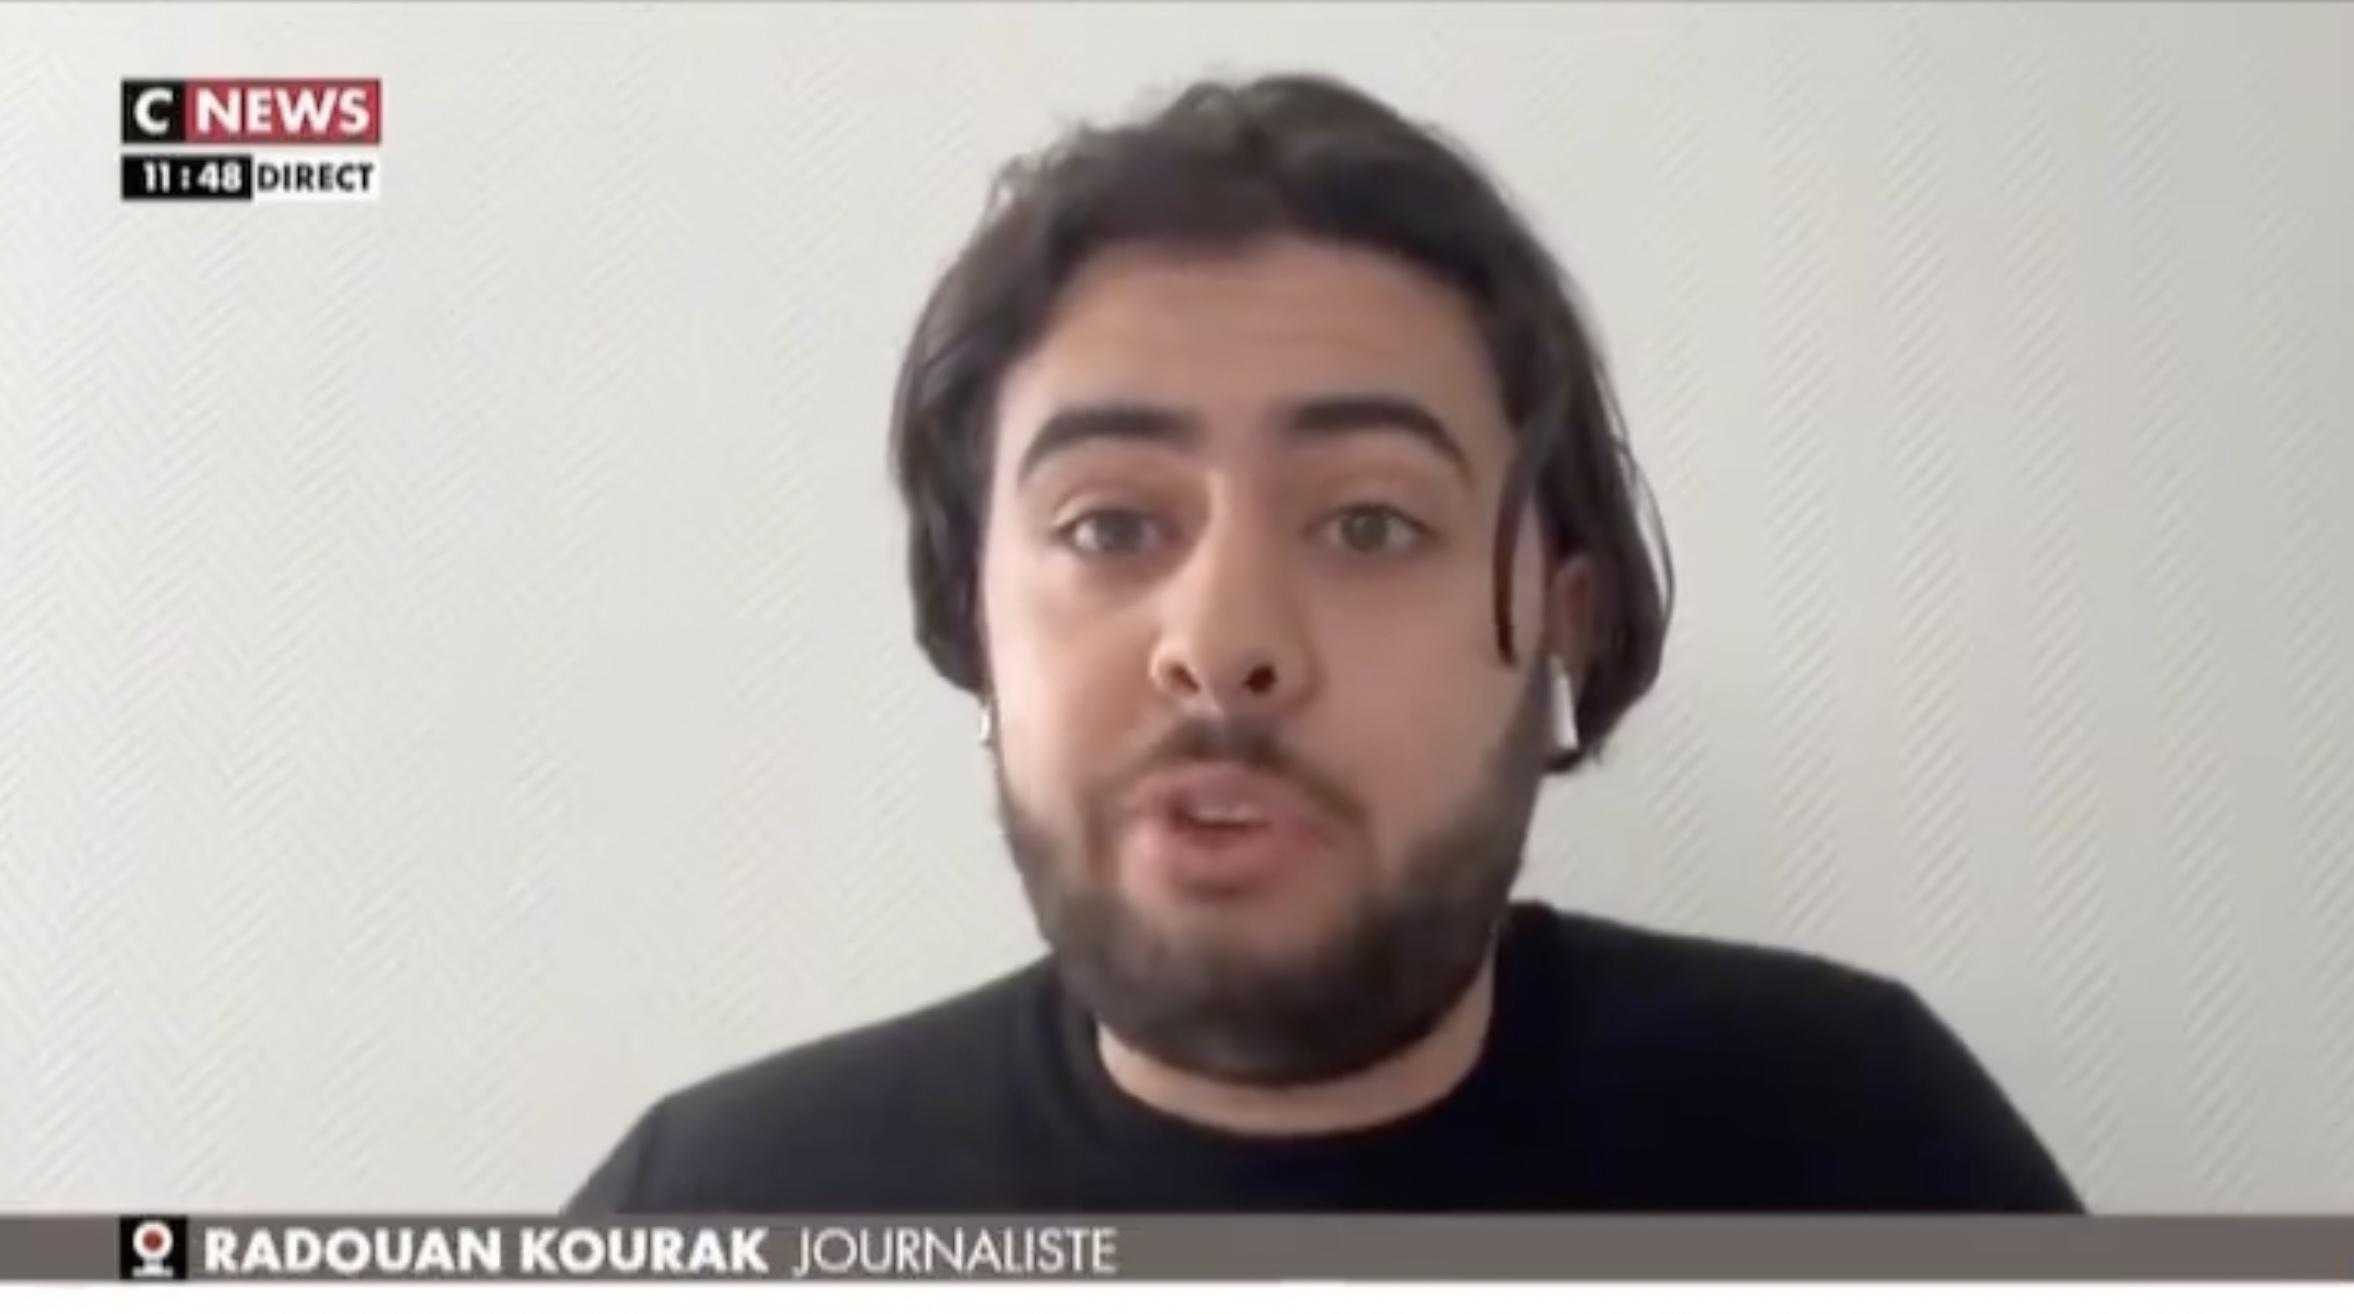 le journaliste radouan kourak menacé de mort après avoir dénoncé les propos de nassira el moaddem sur la france